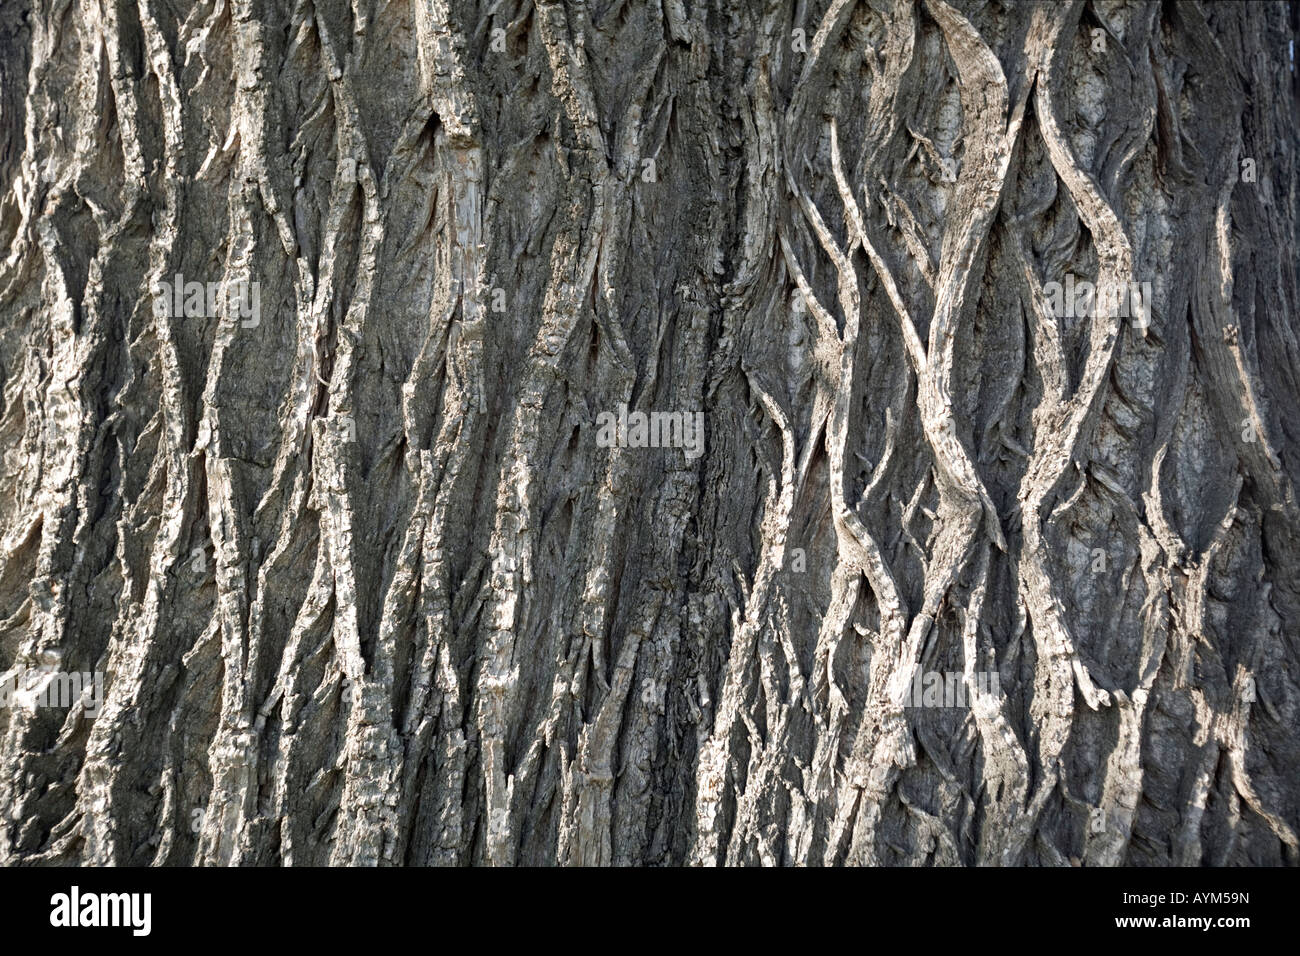 Der Bolus von einem hundert Jahre alten Chesnut-Baum (Castanea Sativa). Tronc de Châtaignier (Castanea Sativa) Centenaire. Stockfoto